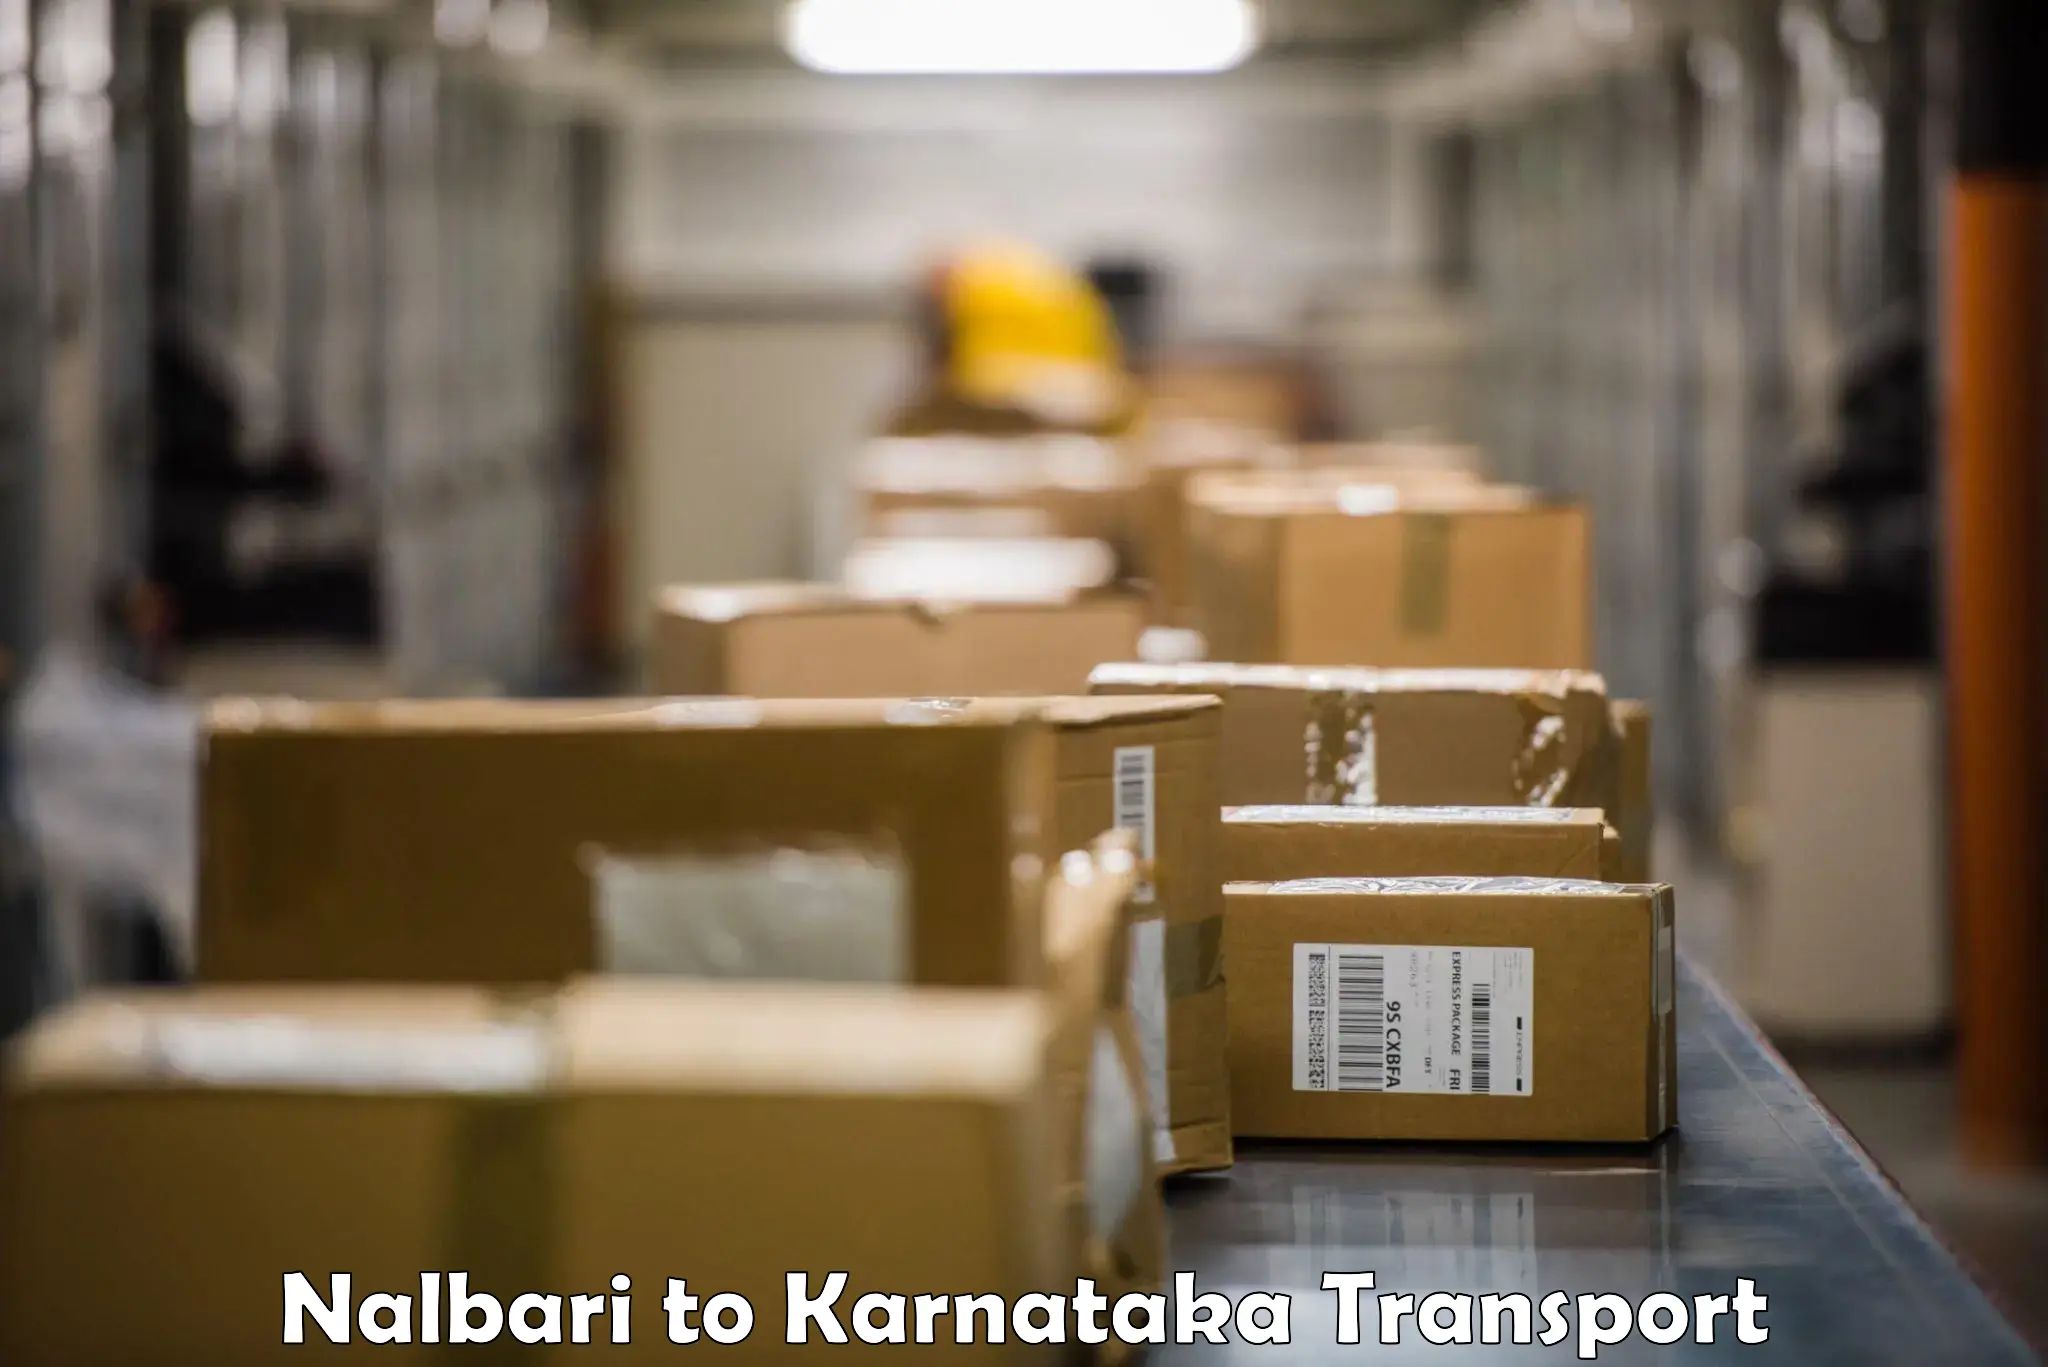 Truck transport companies in India Nalbari to Kowthal